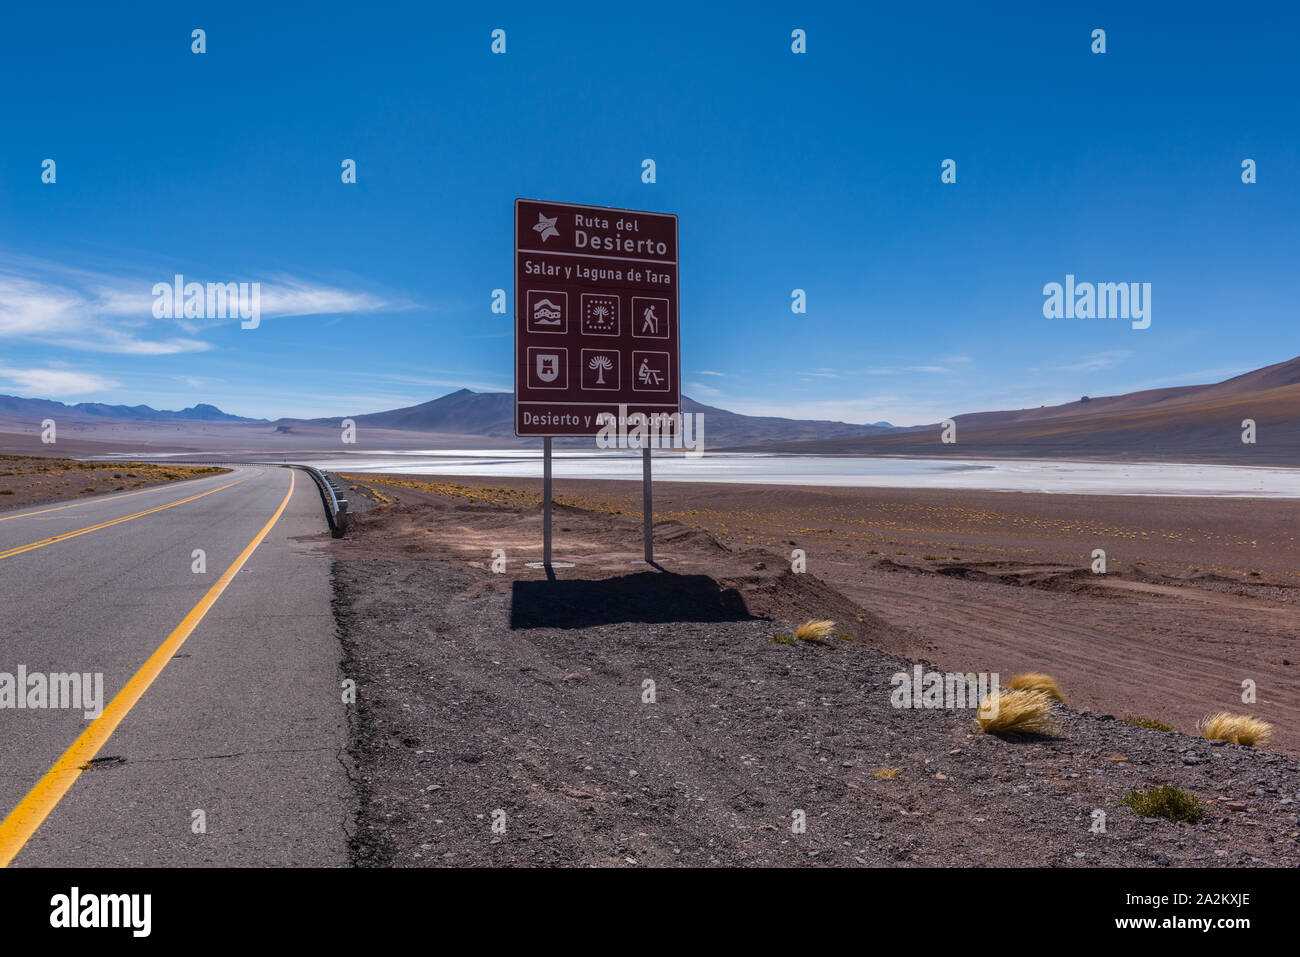 A lo largo de la carretera nacional desde San Pedro de Atacama, Chile, a la ciudad fronteriza Argentina de Jama, República de Chile, América Latina Foto de stock